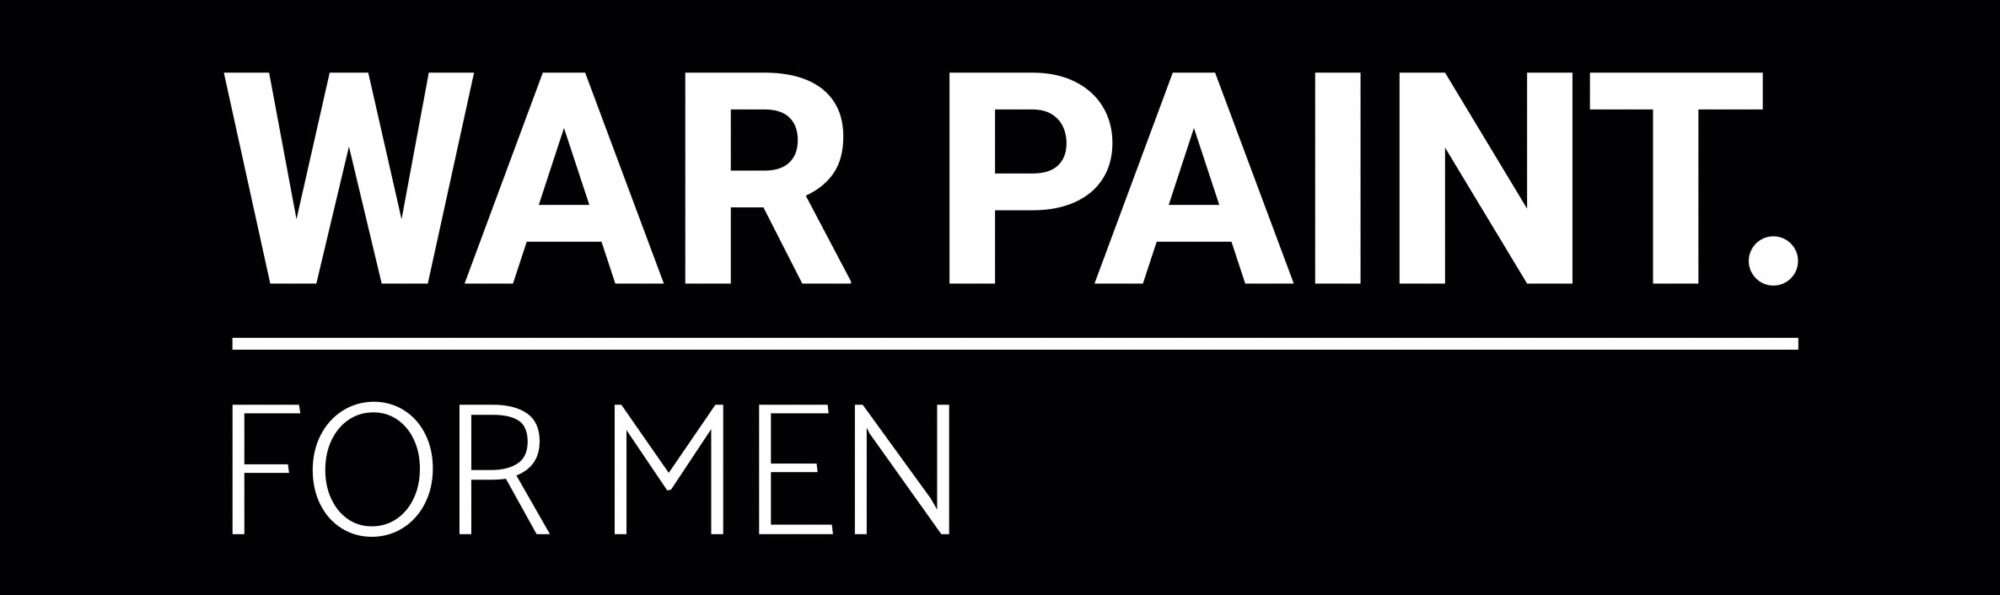 War paint for men logo